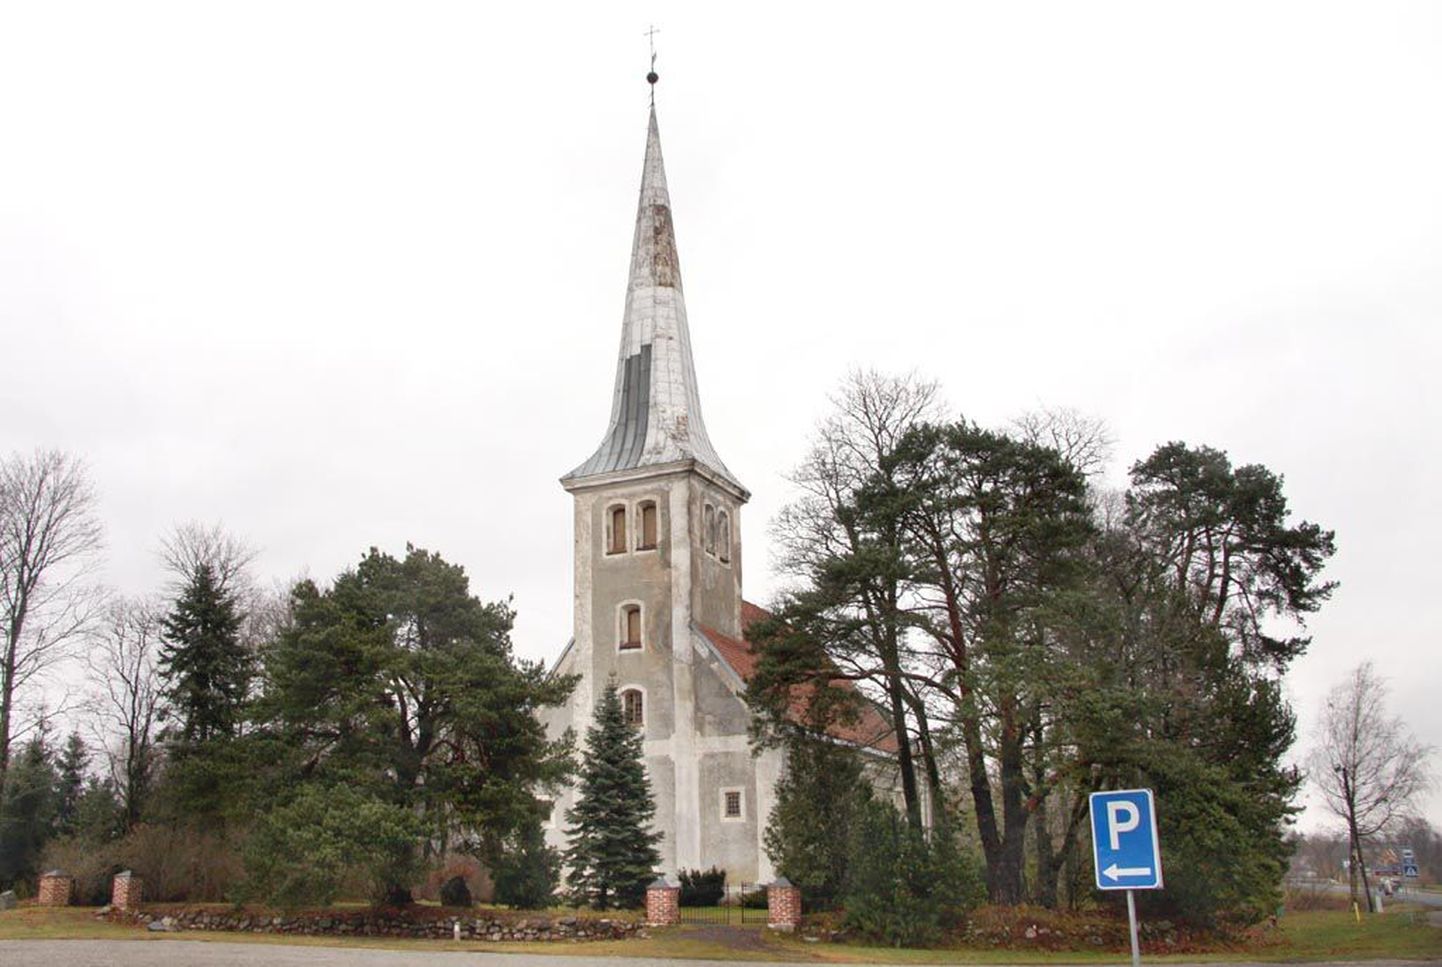 Audru kirik ehitati aastail 1677 - 1680 vana puukiriku asemele, mis püstitati 1636. aastal ja oli väidetavalt üks esimesi luteri usu kirikuid Eesti alal.